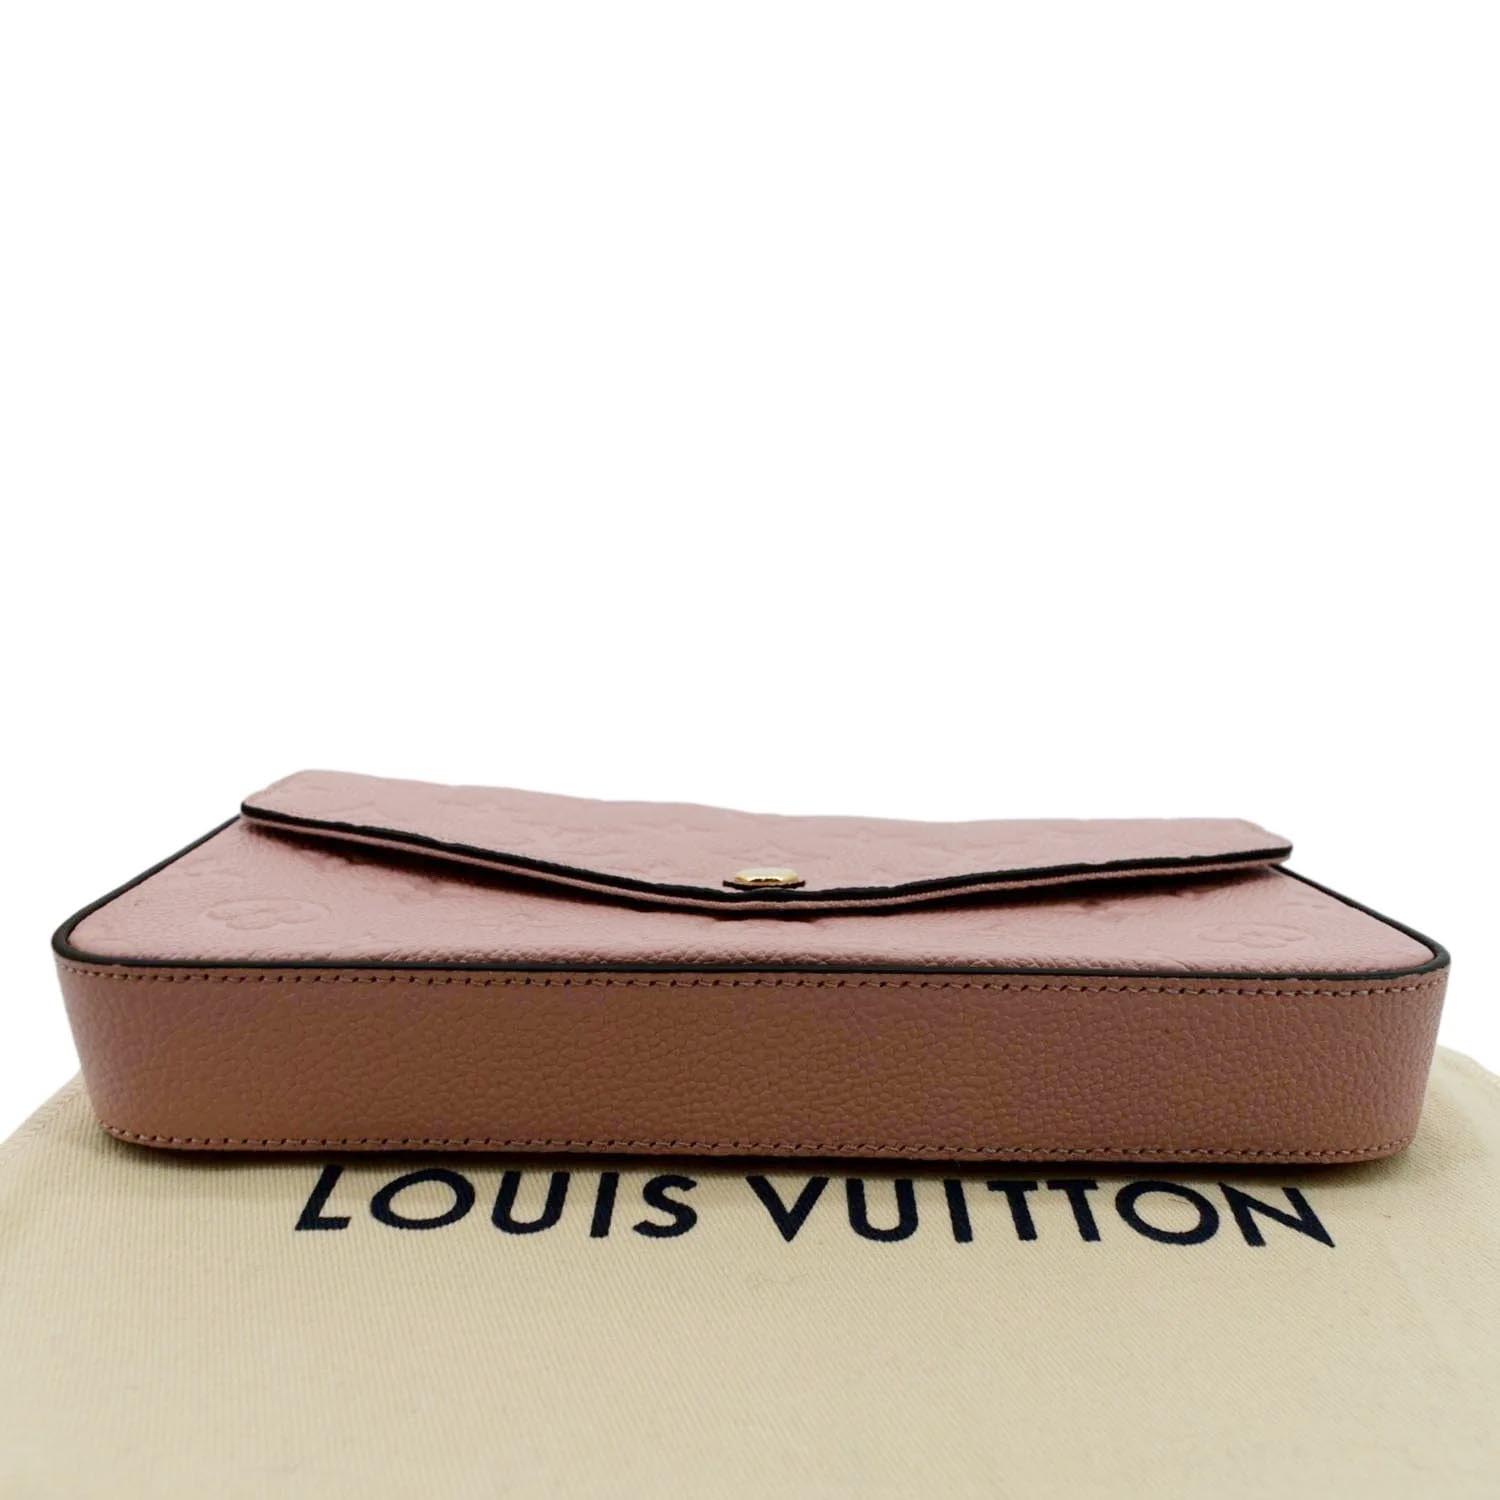 LOUIS VUITTON Empreinte Pochette Felicie Chain Wallet Cherry - MyDesignerly